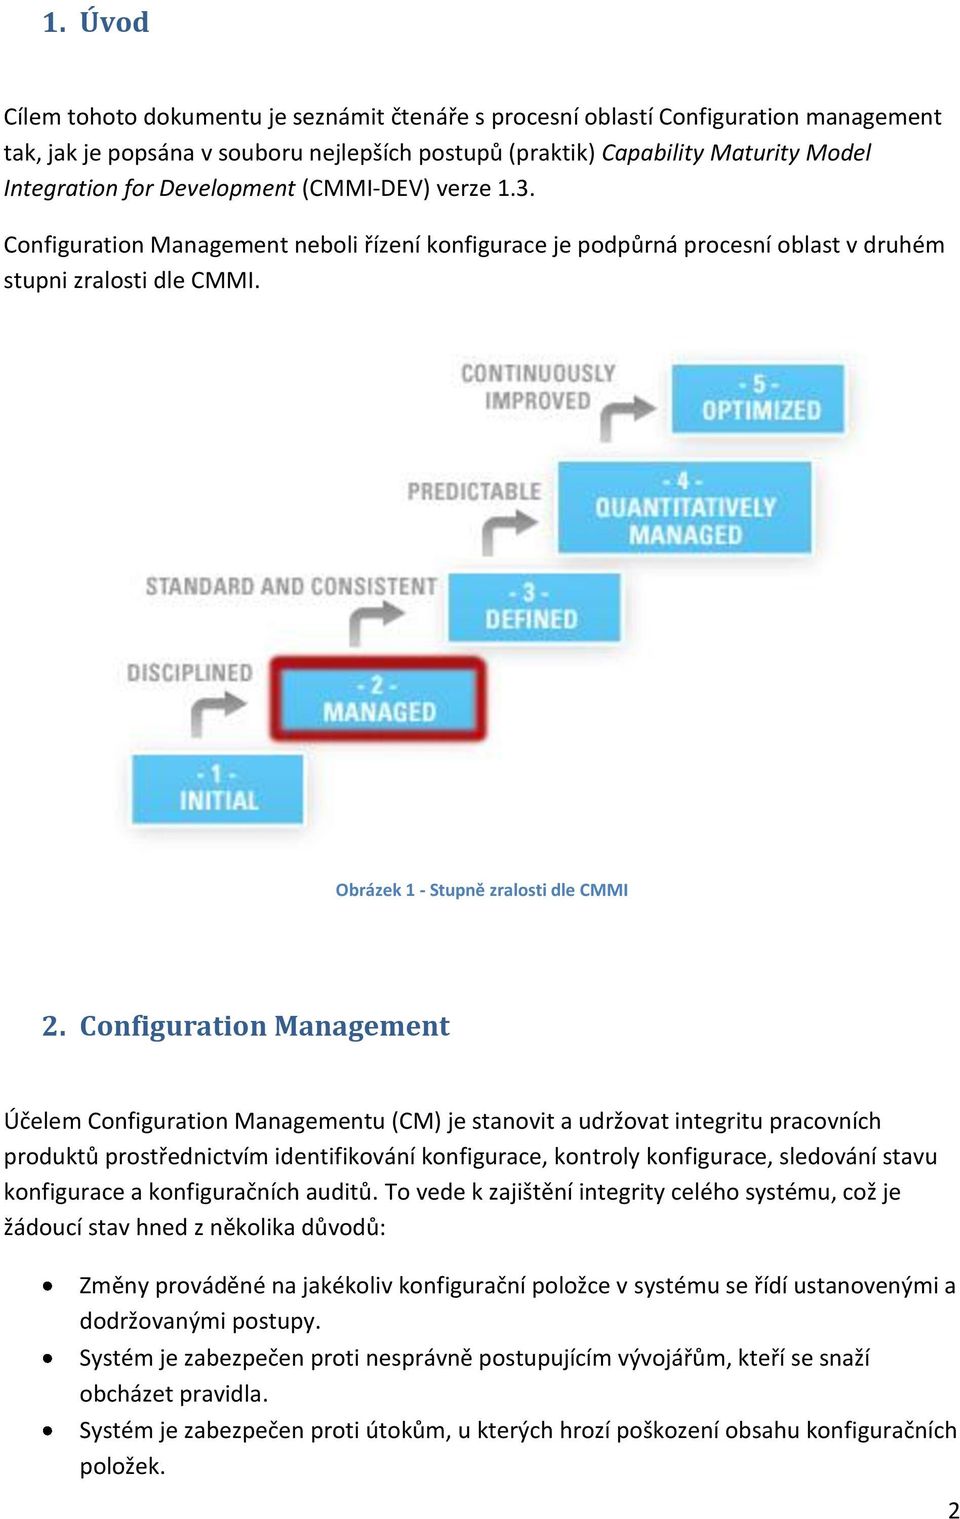 Configuration Management Účelem Configuration Managementu (CM) je stanovit a udržovat integritu pracovních produktů prostřednictvím identifikování konfigurace, kontroly konfigurace, sledování stavu